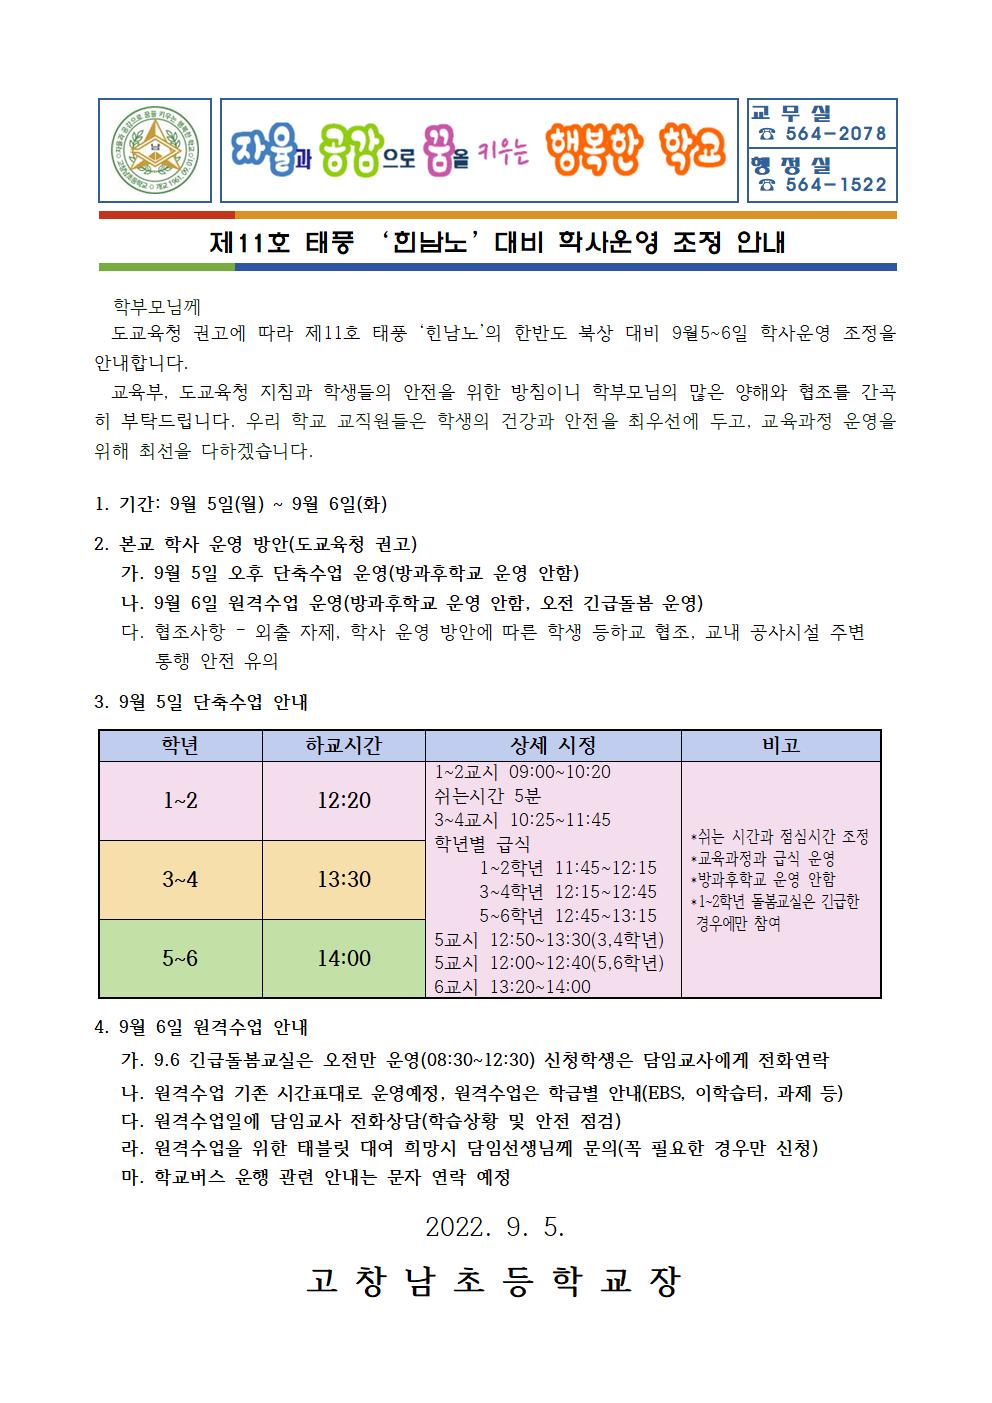 제11호 태풍 '힌남노' 대비 학사운영 조정 안내001